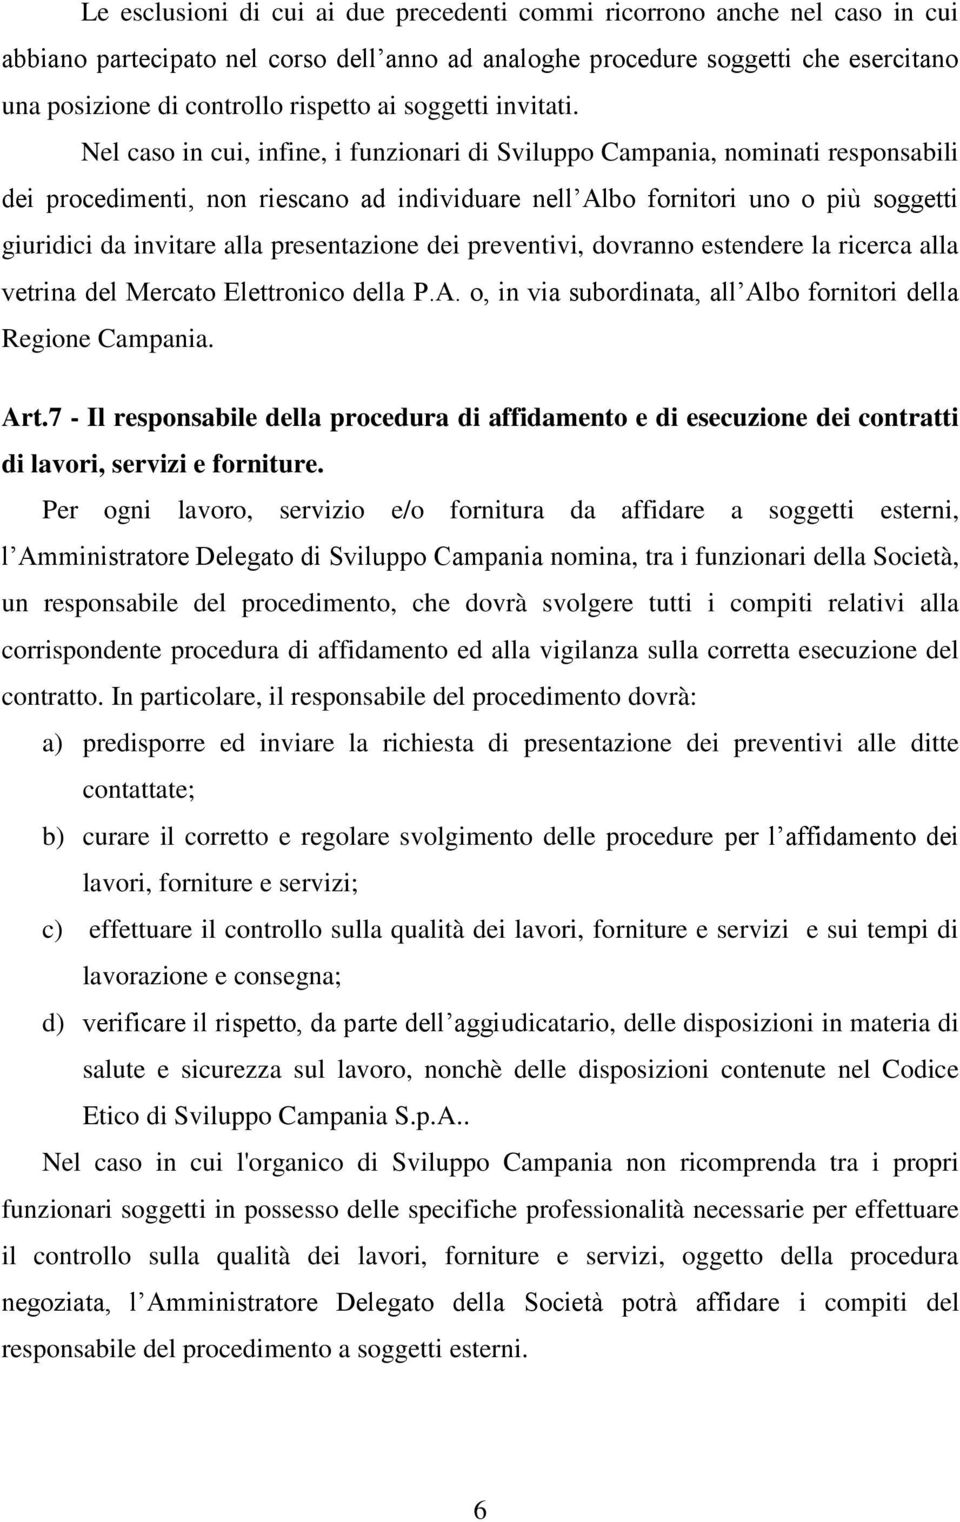 Nel caso in cui, infine, i funzionari di Sviluppo Campania, nominati responsabili dei procedimenti, non riescano ad individuare nell Albo fornitori uno o più soggetti giuridici da invitare alla